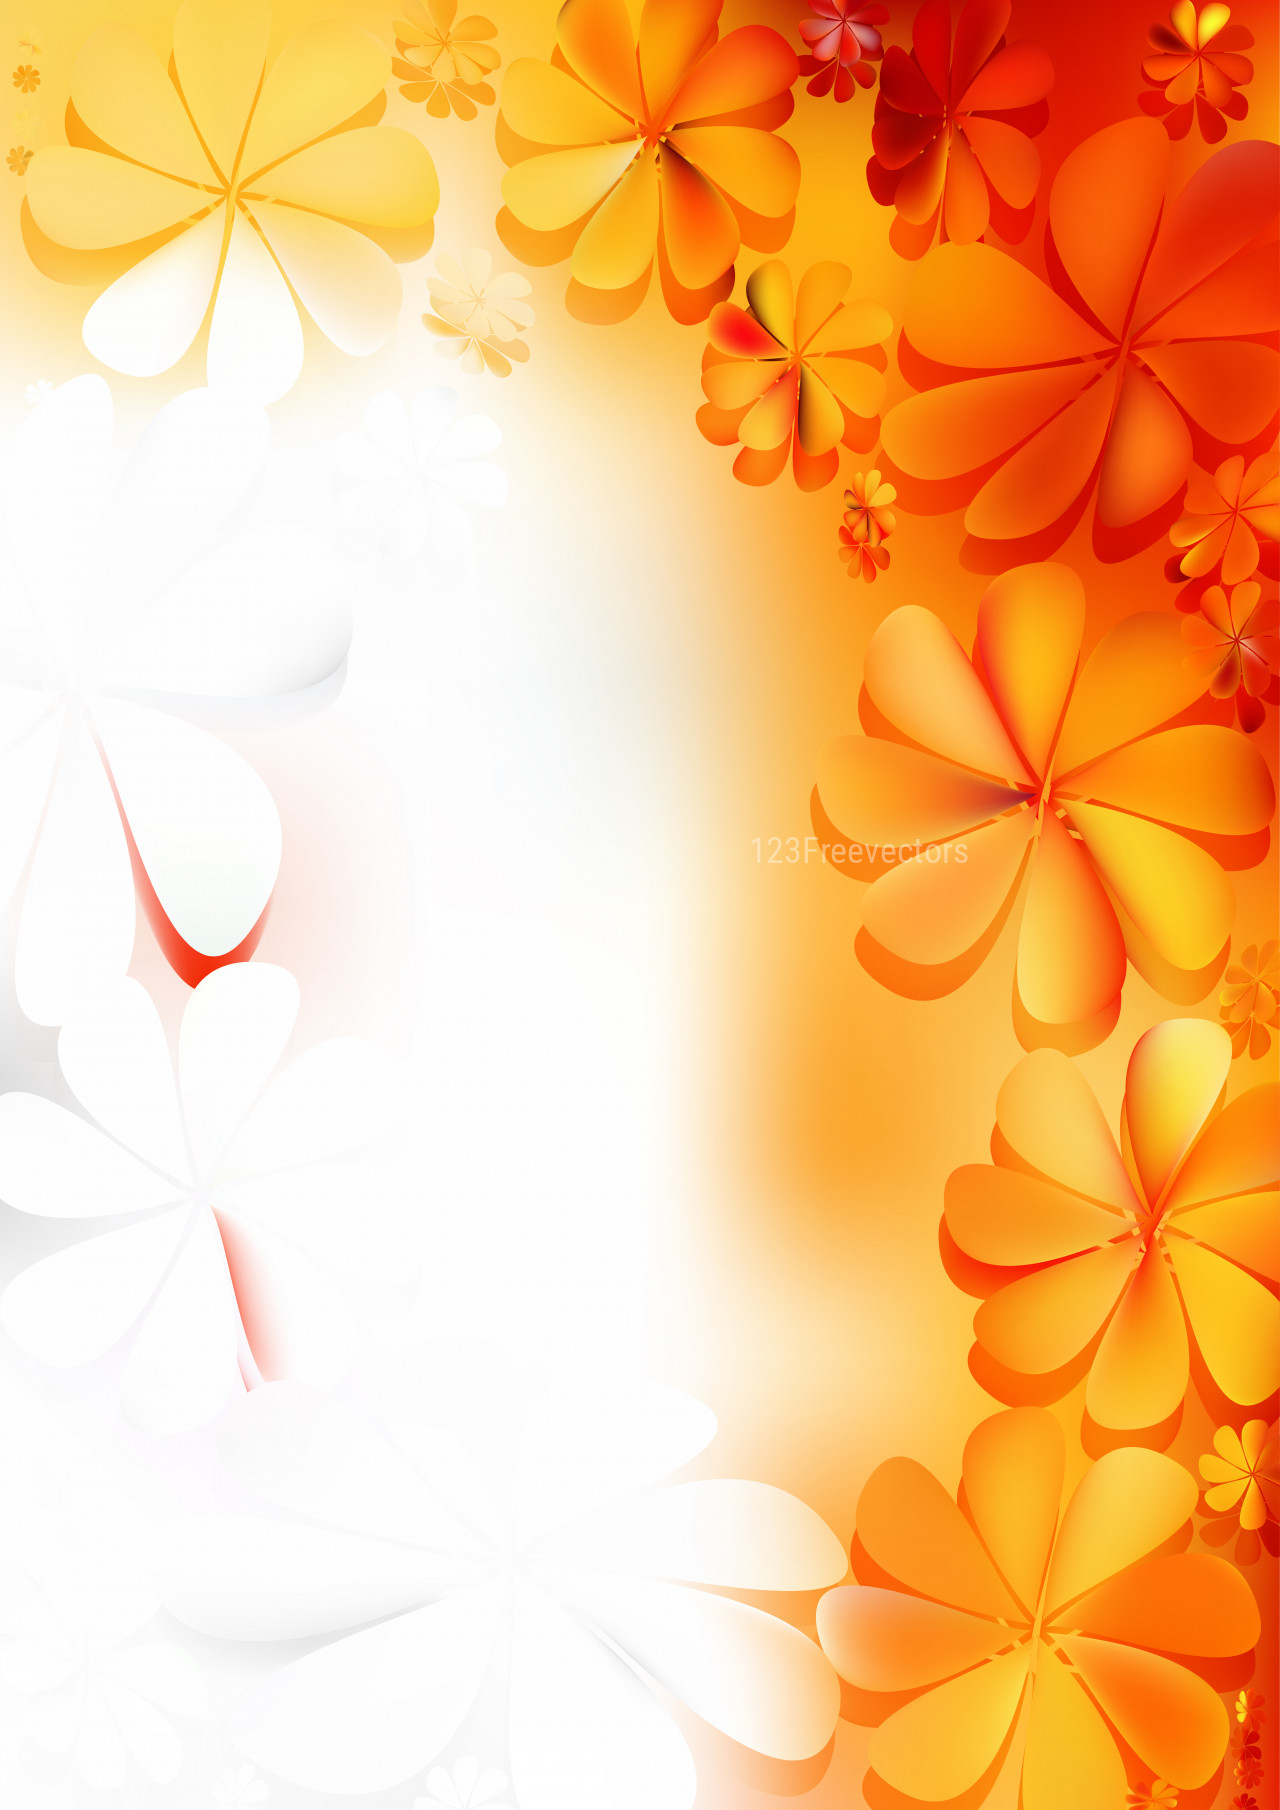 Bạn đang tìm kiếm một hình nền vector đẹp với hoa trắng cam nền thật tinh tế? Hãy xem ngay hình ảnh liên quan và thực sự bị cuốn hút bởi sự đẹp của chúng.